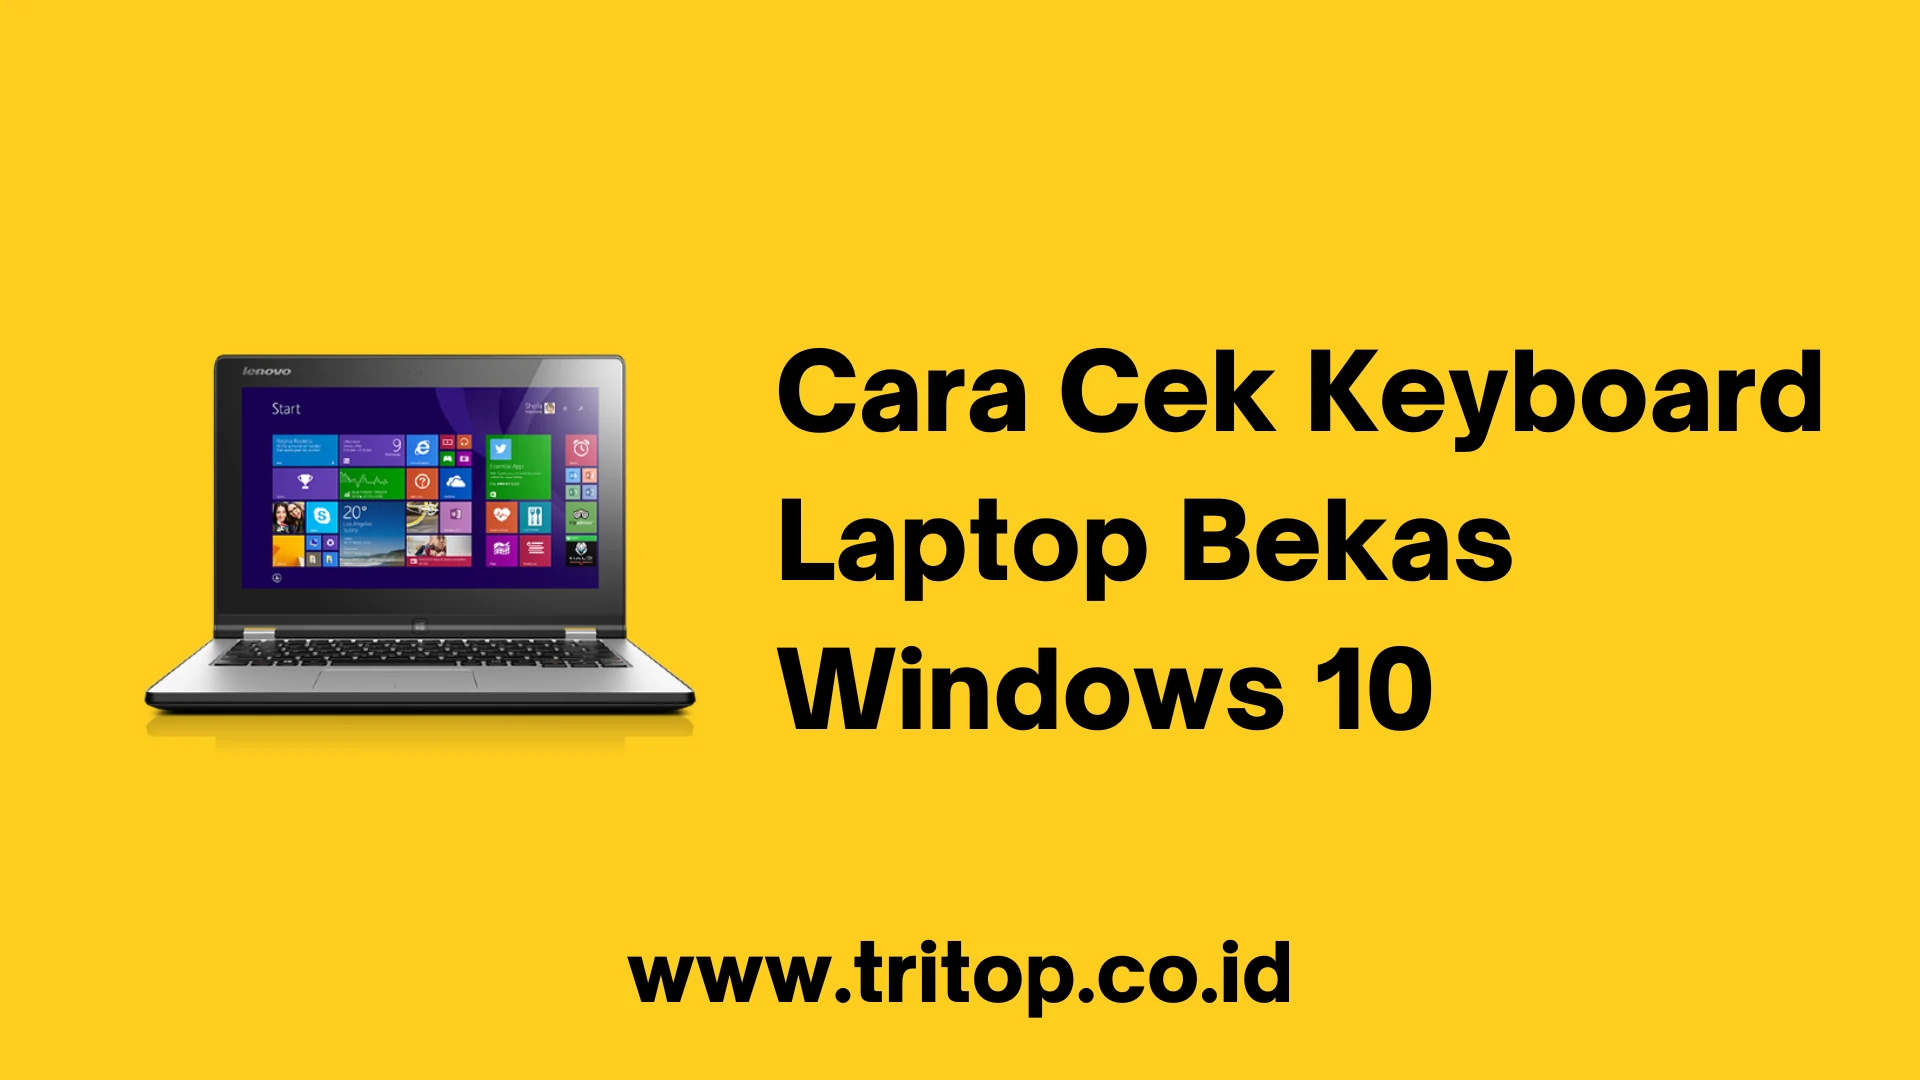 Cara Cek Keyboard Laptop Bekas Windows 10